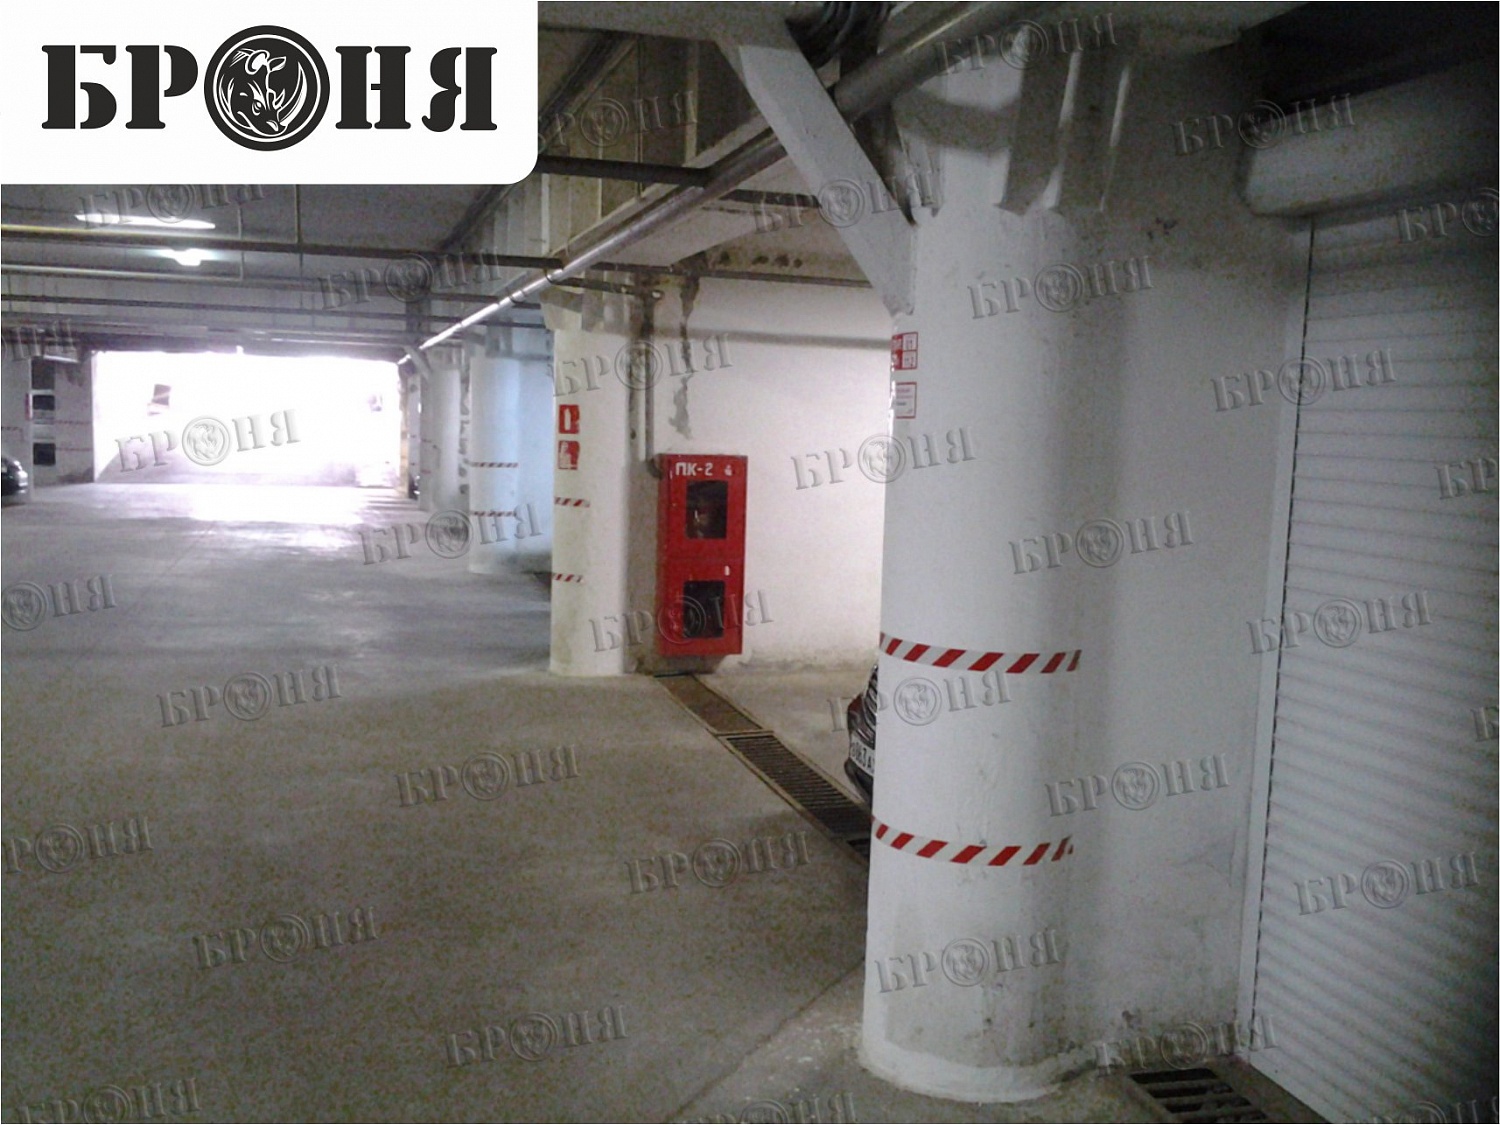 Самара, устранение конденсата на опорах подземного паркинга